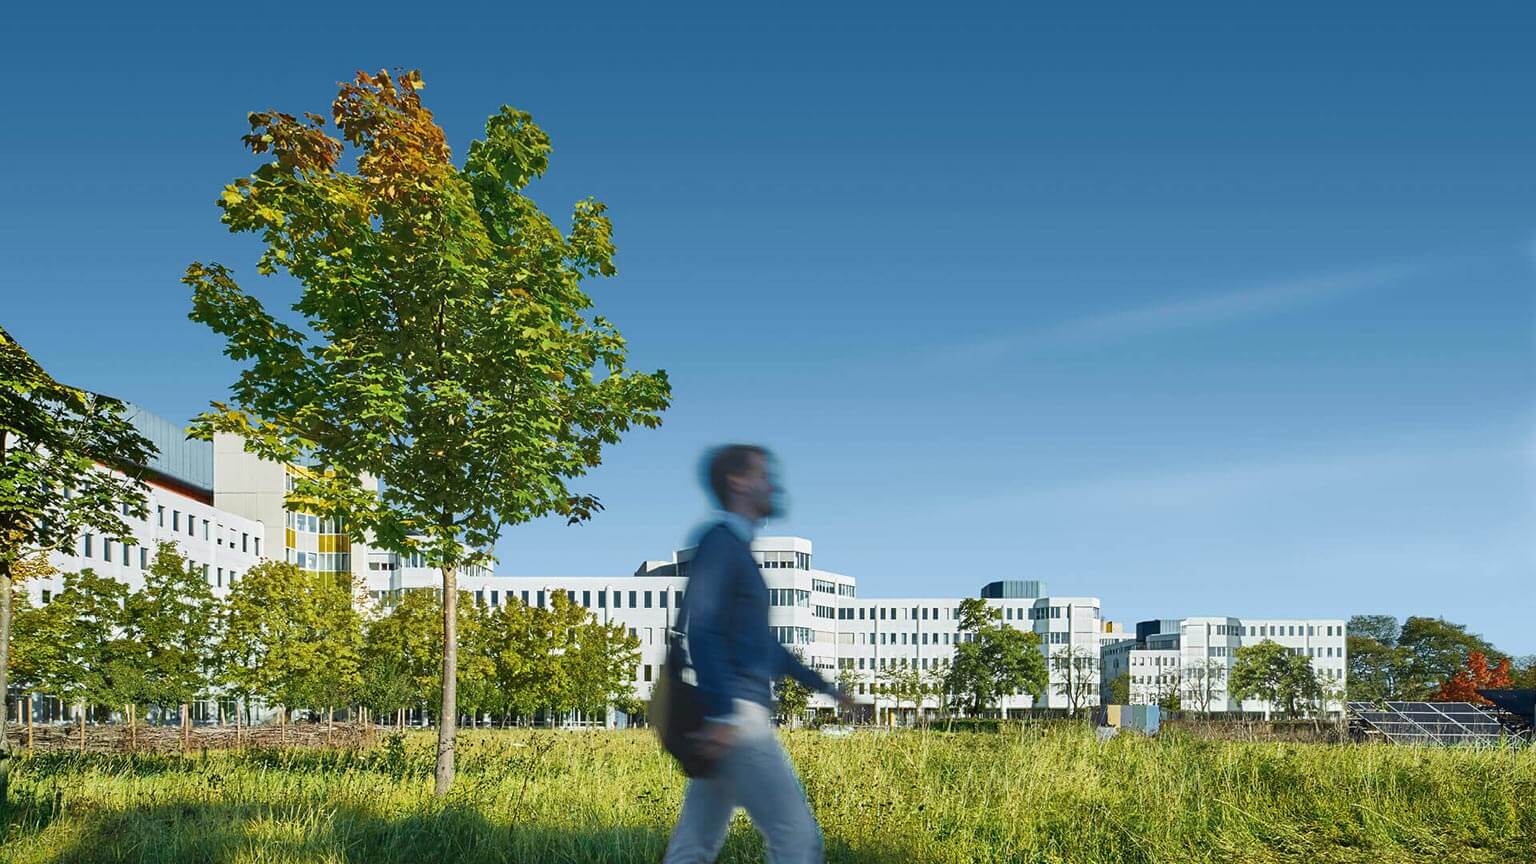 Mann läuft vor einem großen weißen Gebäude mit viel grün aus Bäumen und Wiese